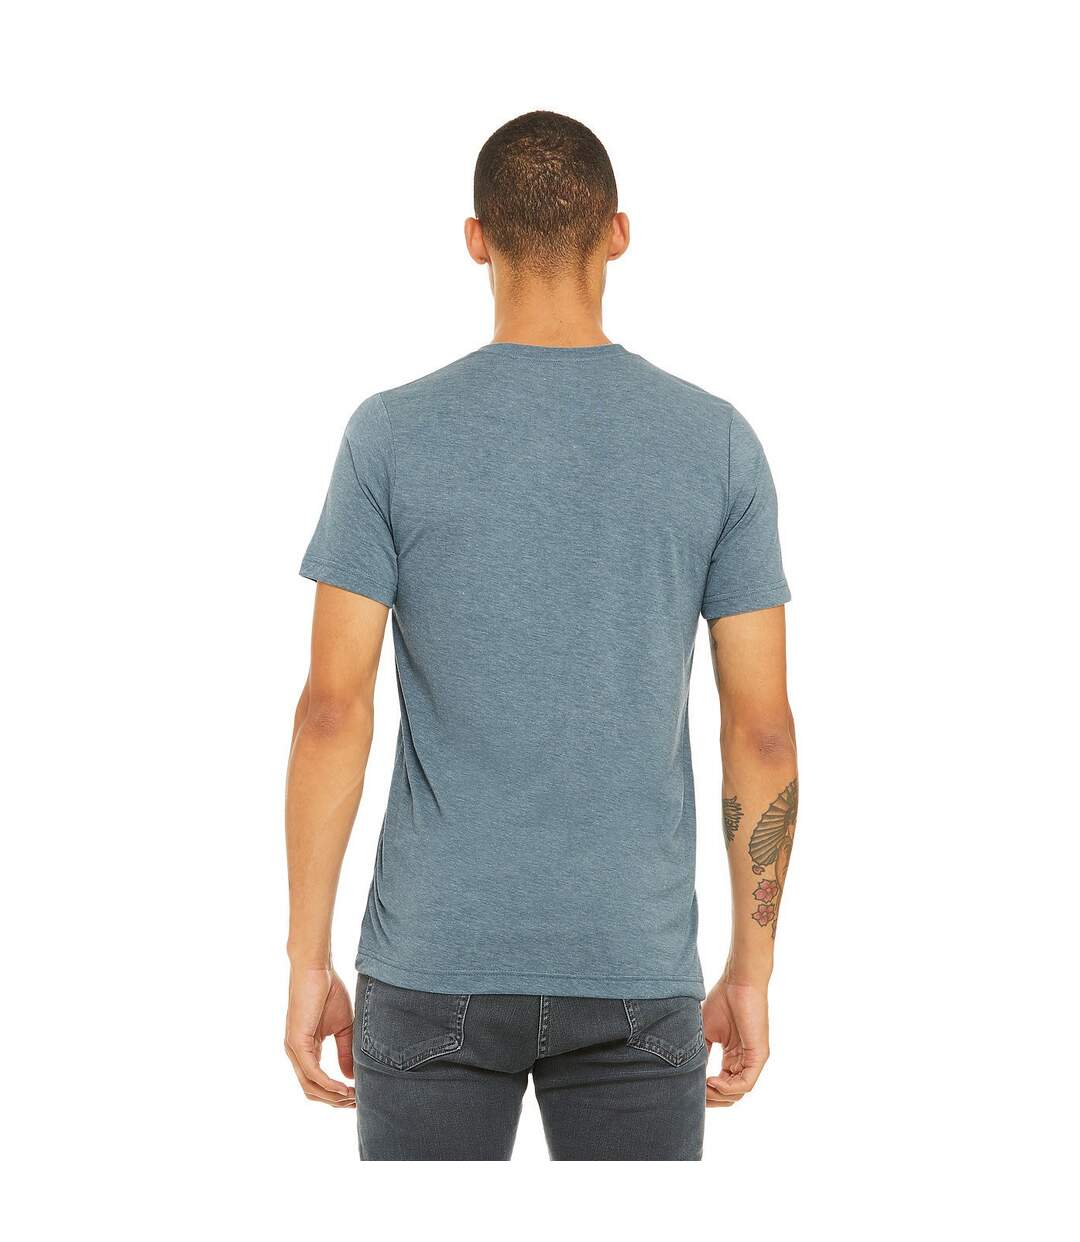 Canvas - T-shirt à manches courtes - Homme (Denim) - UTBC2596